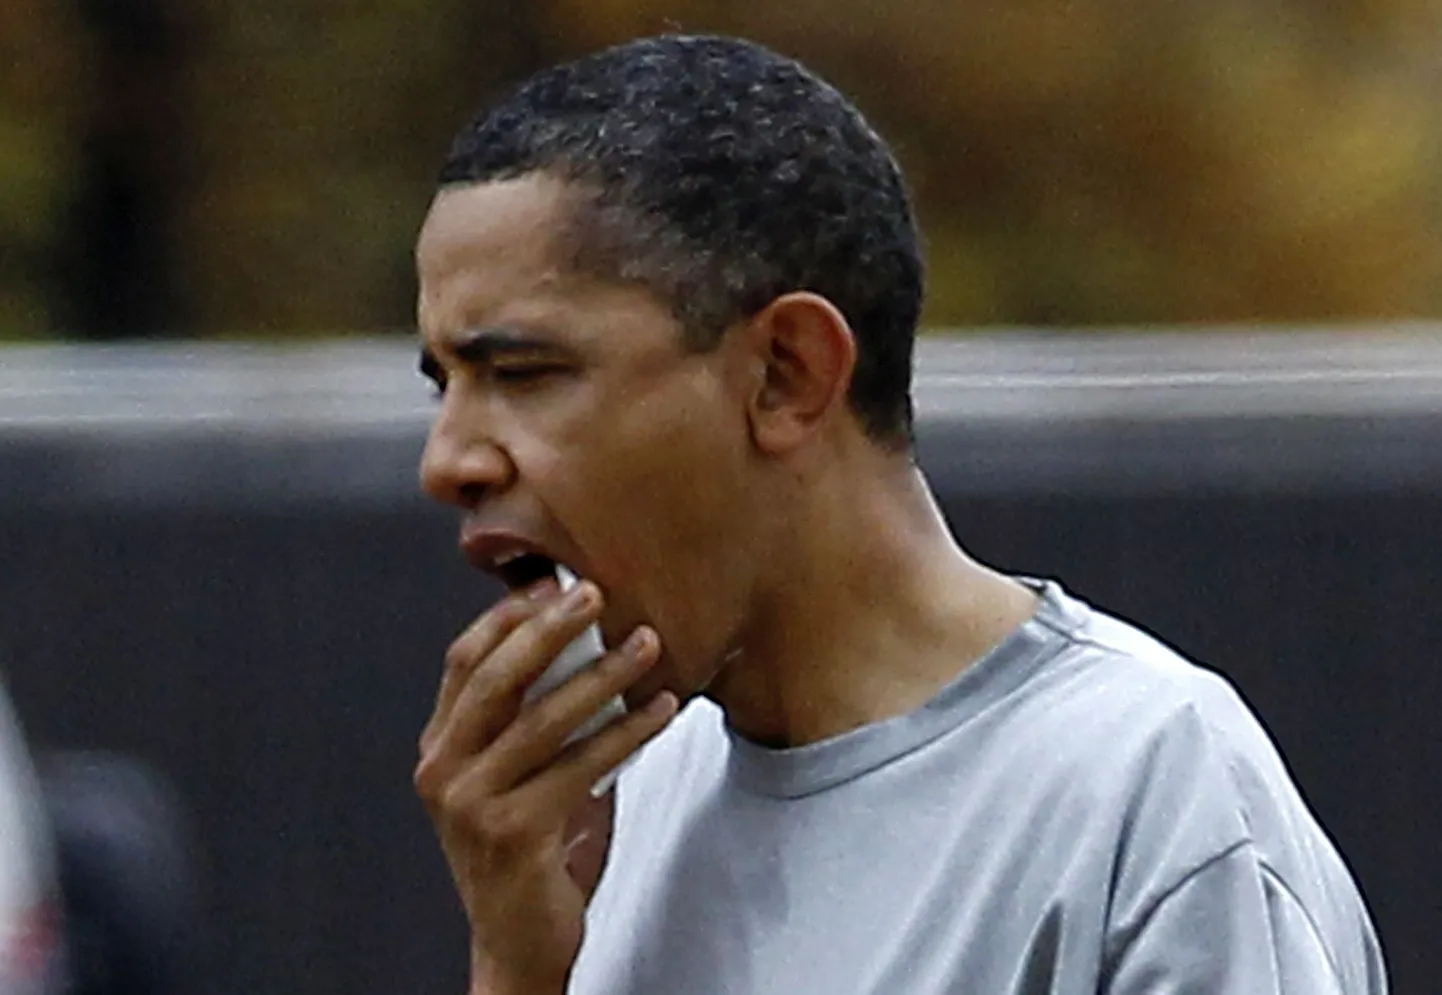 Barack Obama sai korvallimängus  küünarnukiga vastu huult ja vajas arstide abi.